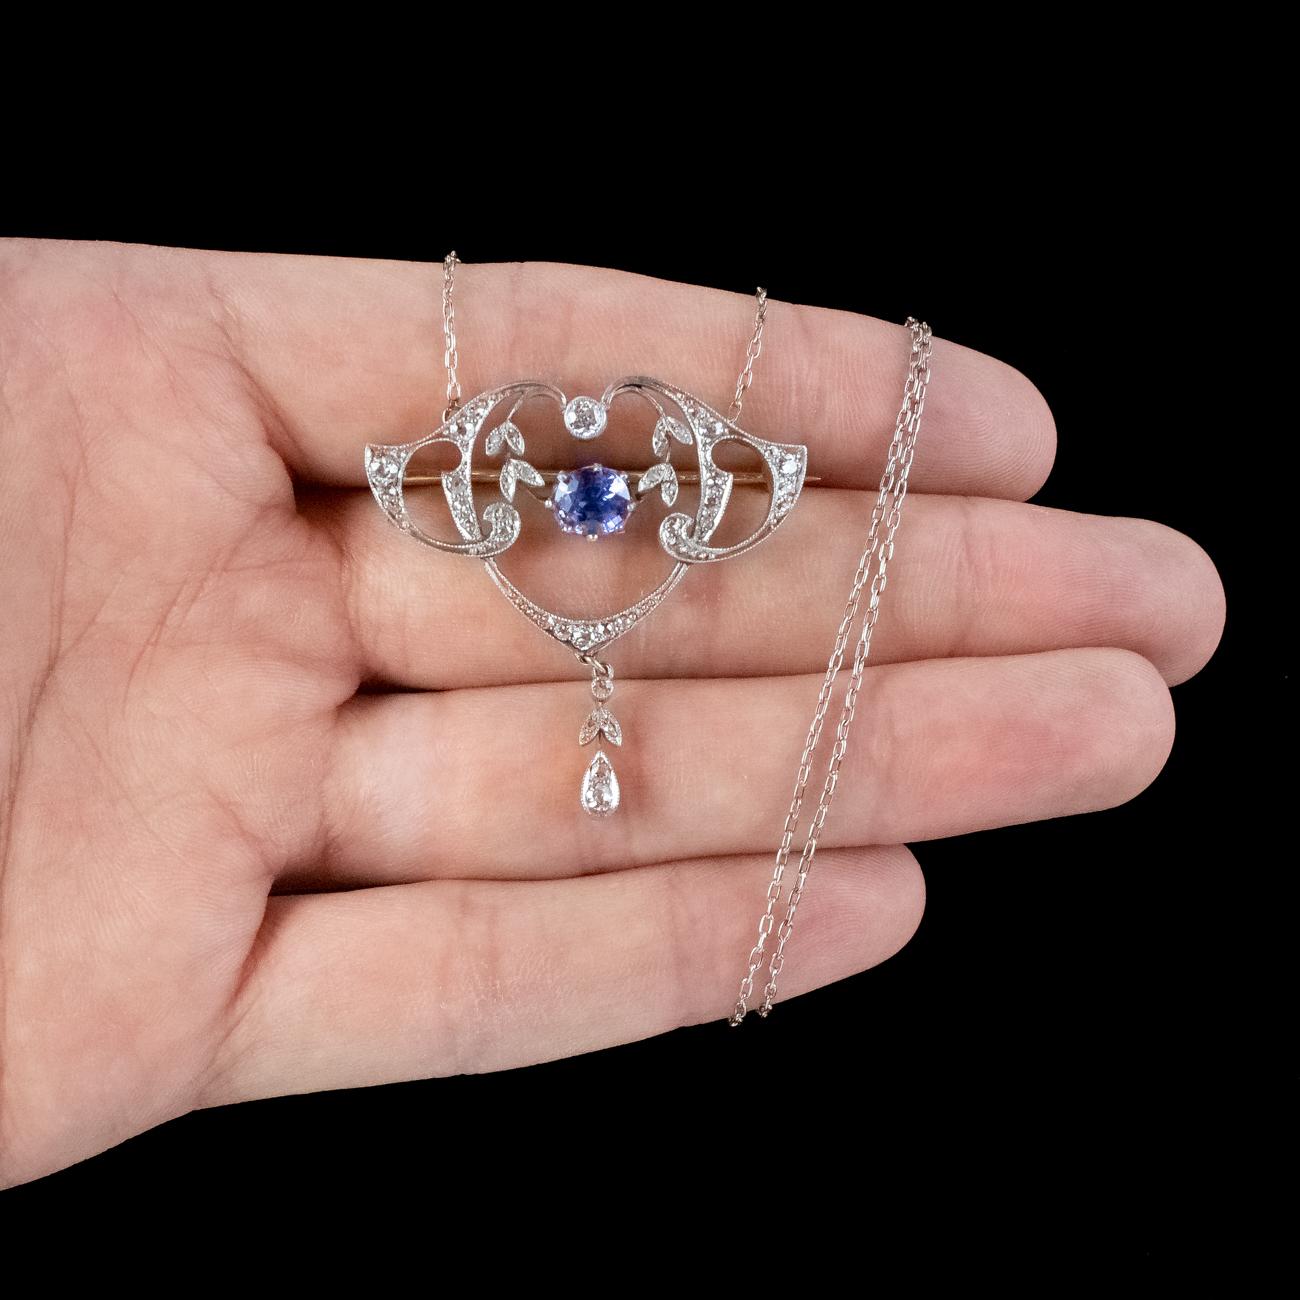 Antique Edwardian Ceylon Sapphire Diamond Lavaliere Pendant Necklace With Cert For Sale 1